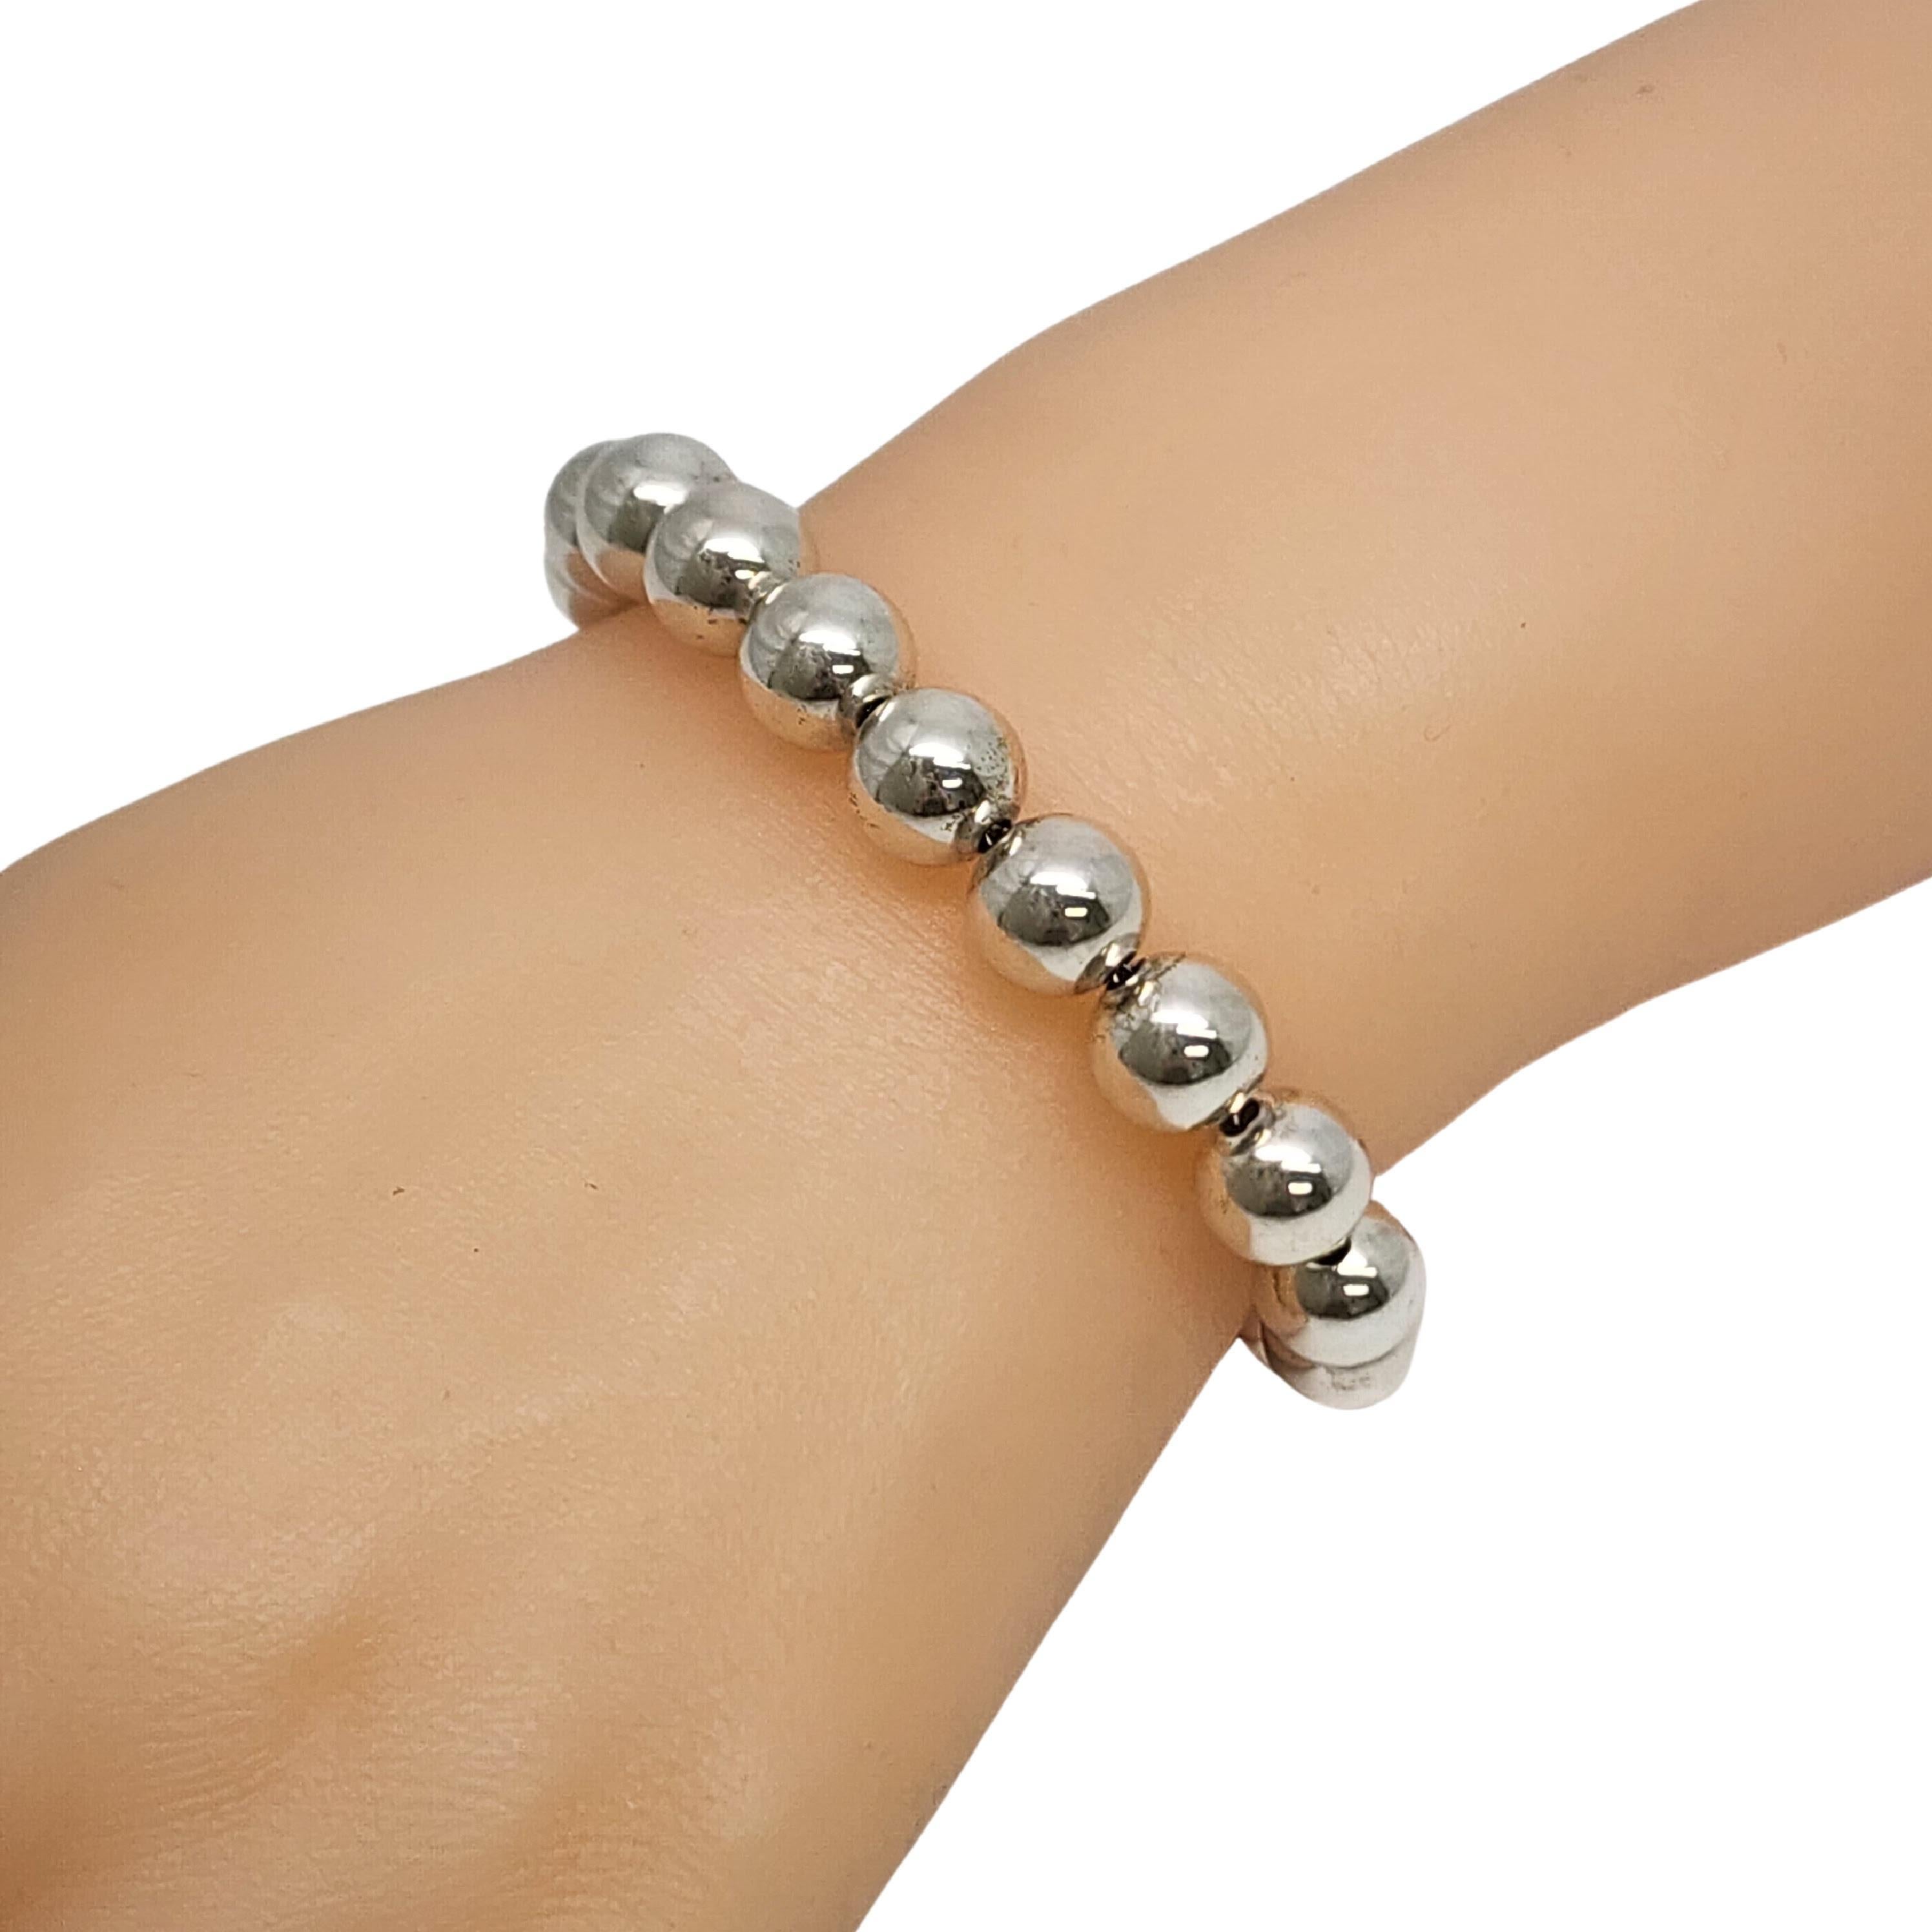 Tiffany & Co Sterling Silver 10mm Ball Bead Bracelet #17251 5